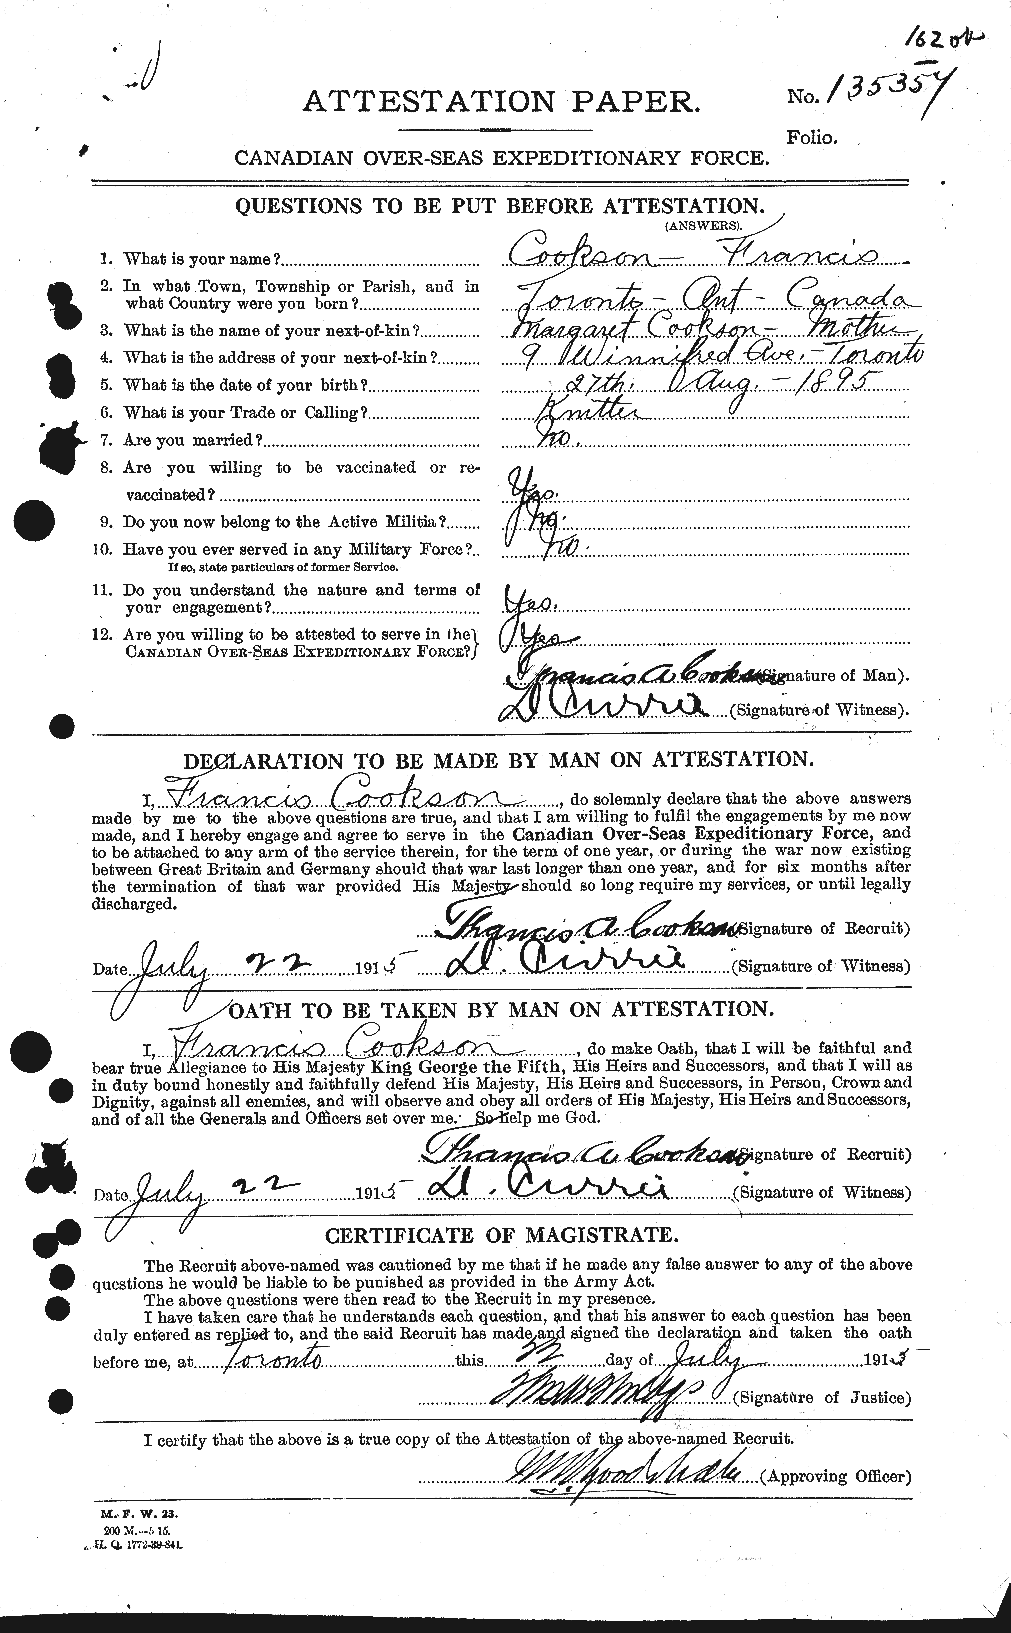 Dossiers du Personnel de la Première Guerre mondiale - CEC 056760a